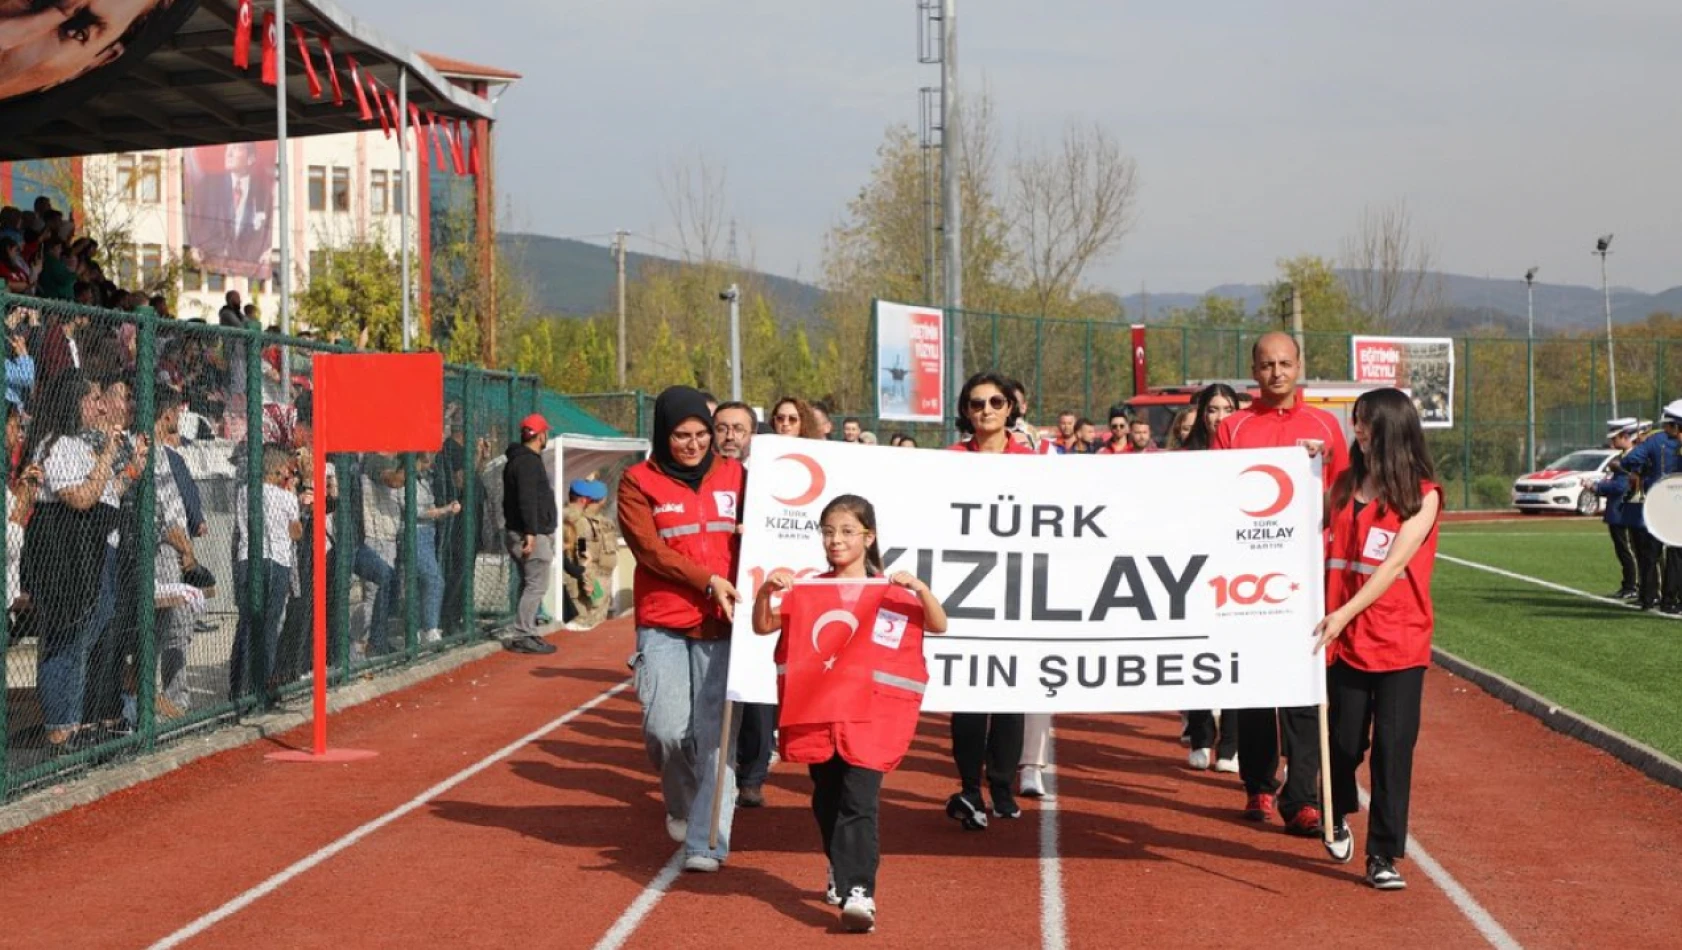 Türk Kızılay'ı öğlencilere anlatılacak